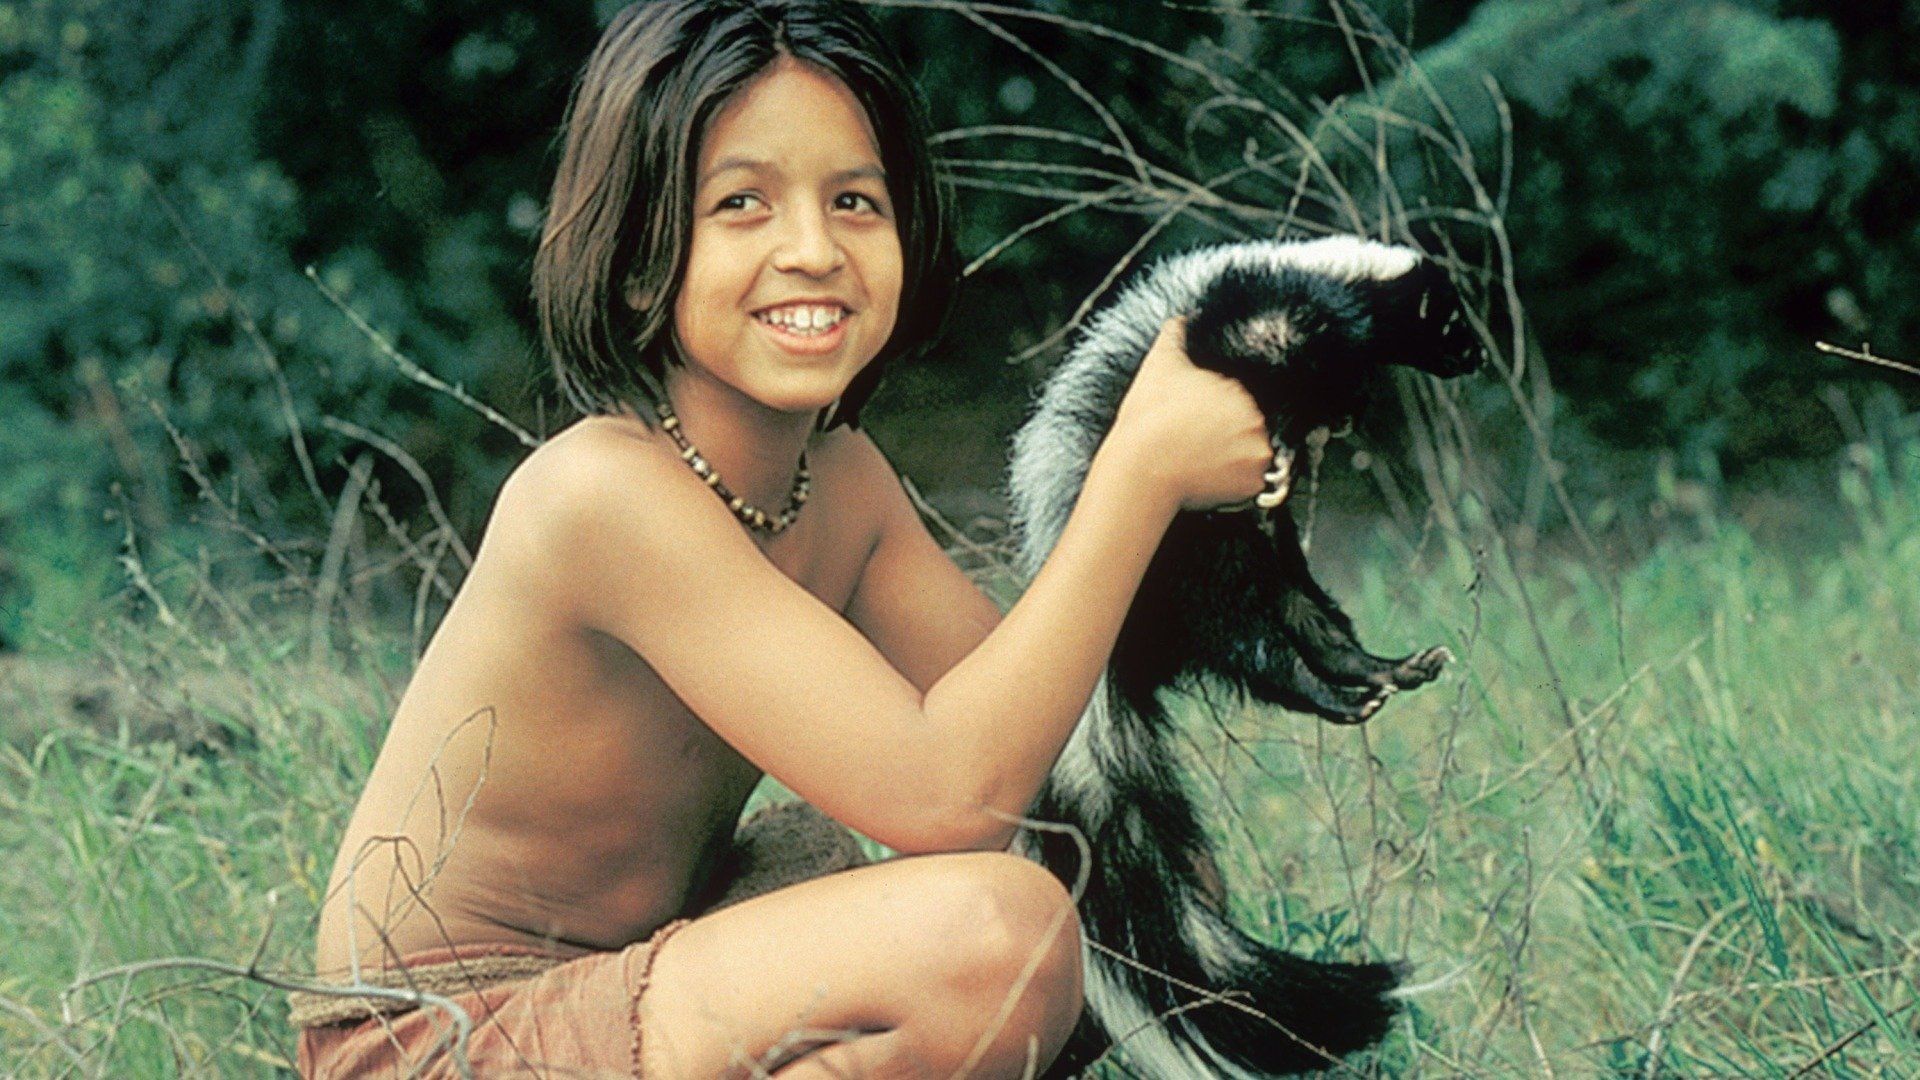 The Jungle Book: Mowgli's Story Backdrop